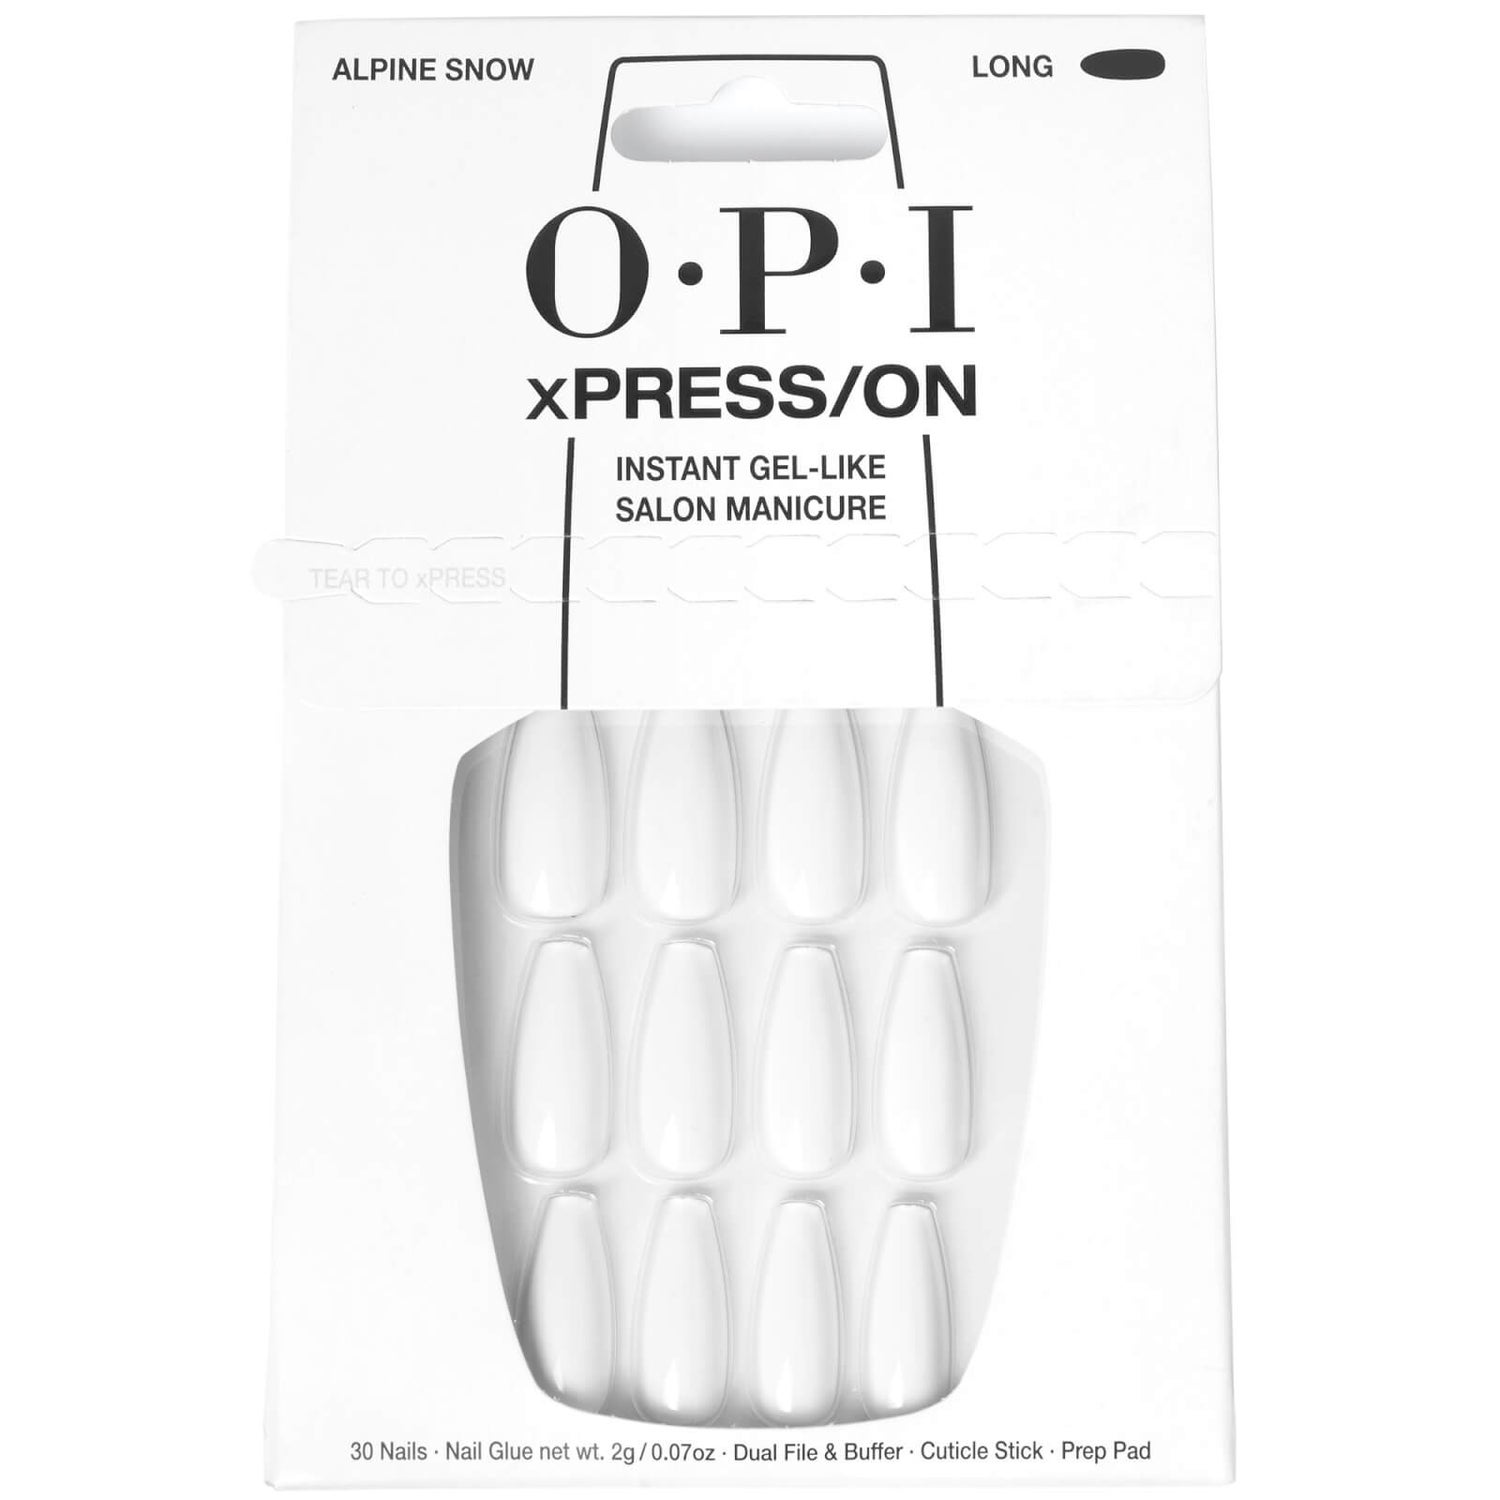 OPI xPRESS/ON - Alpine Snow - LONG Press On Nails Gel-Like Salon Manicure